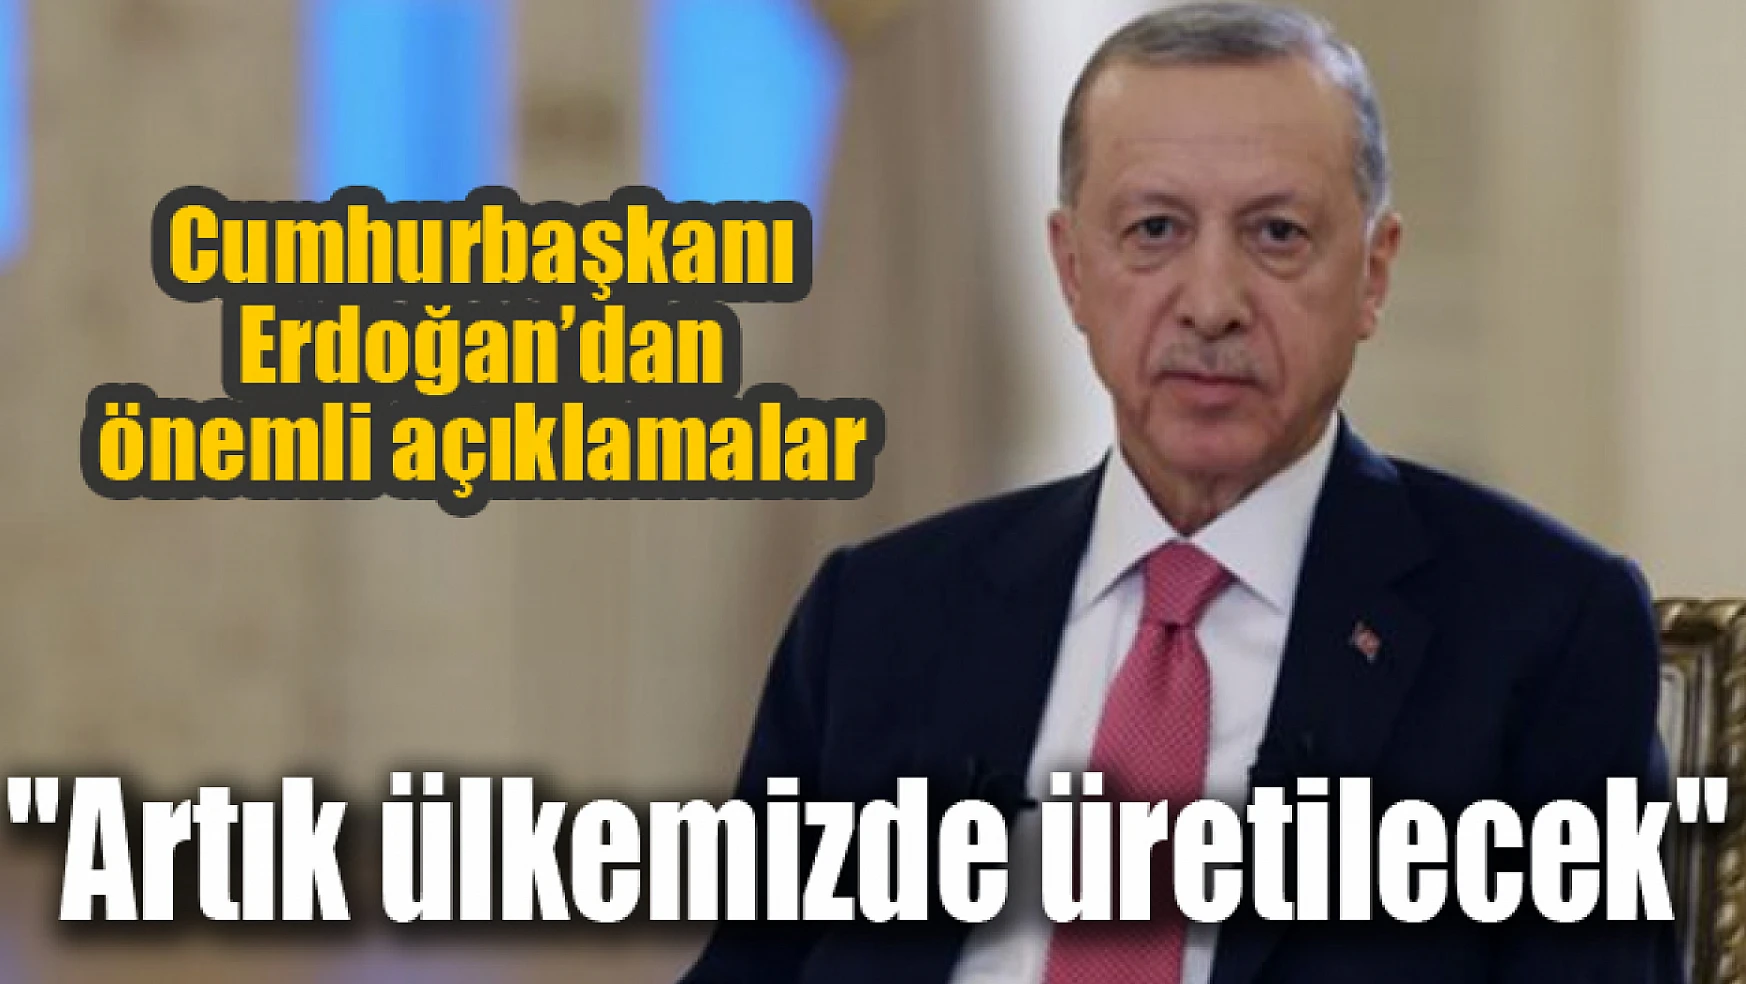 Cumhurbaşkanı Erdoğan'dan önemli açıklamalar! Artık ülkemizde üretilecek